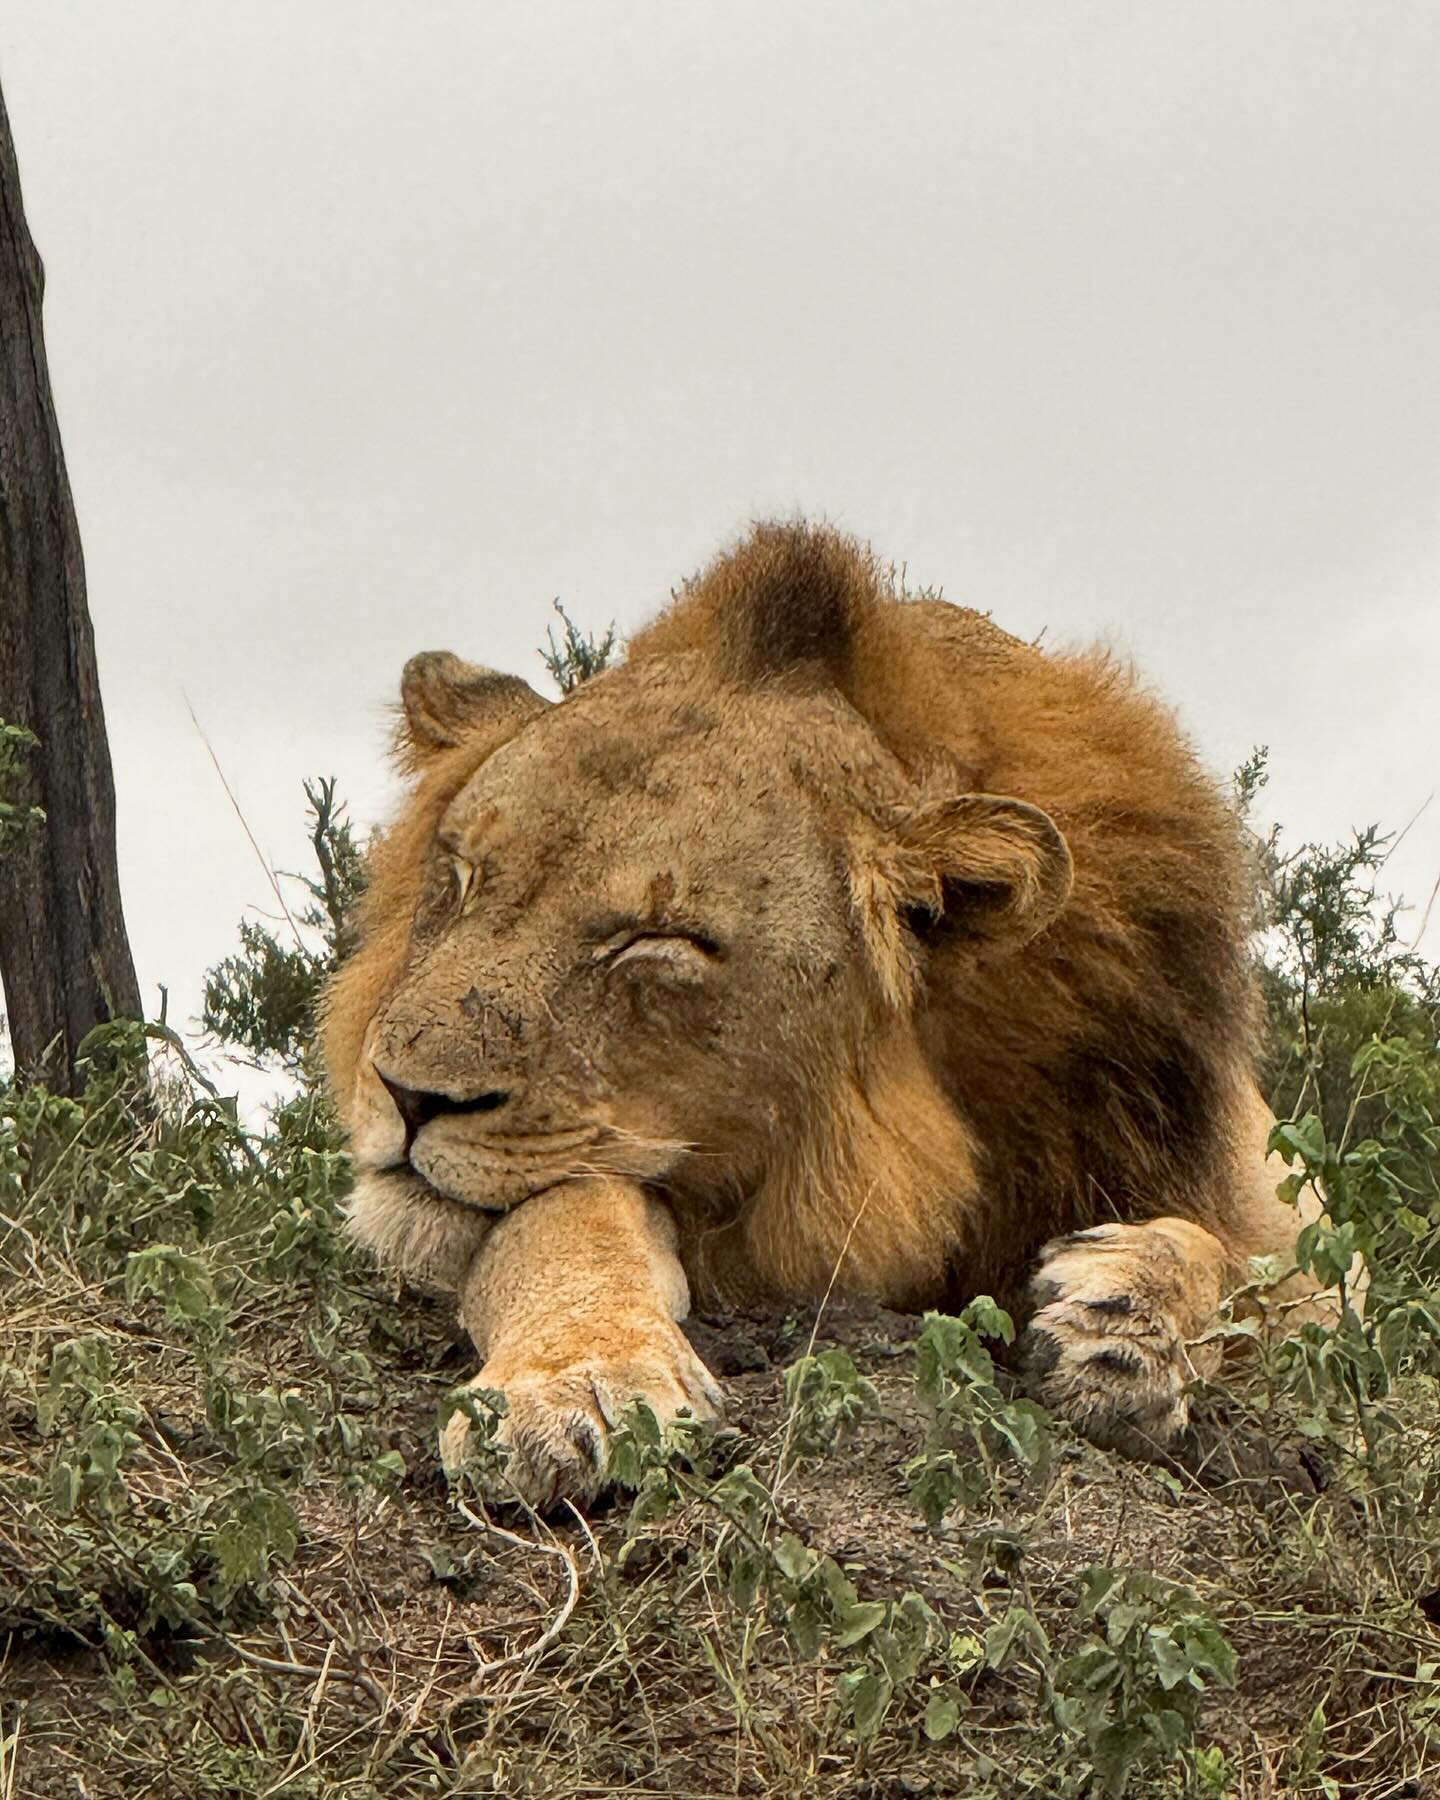 Sunday sleepy heads in the bush 🌿🦁☕️

•
•
#safari #safarichic #sabisands